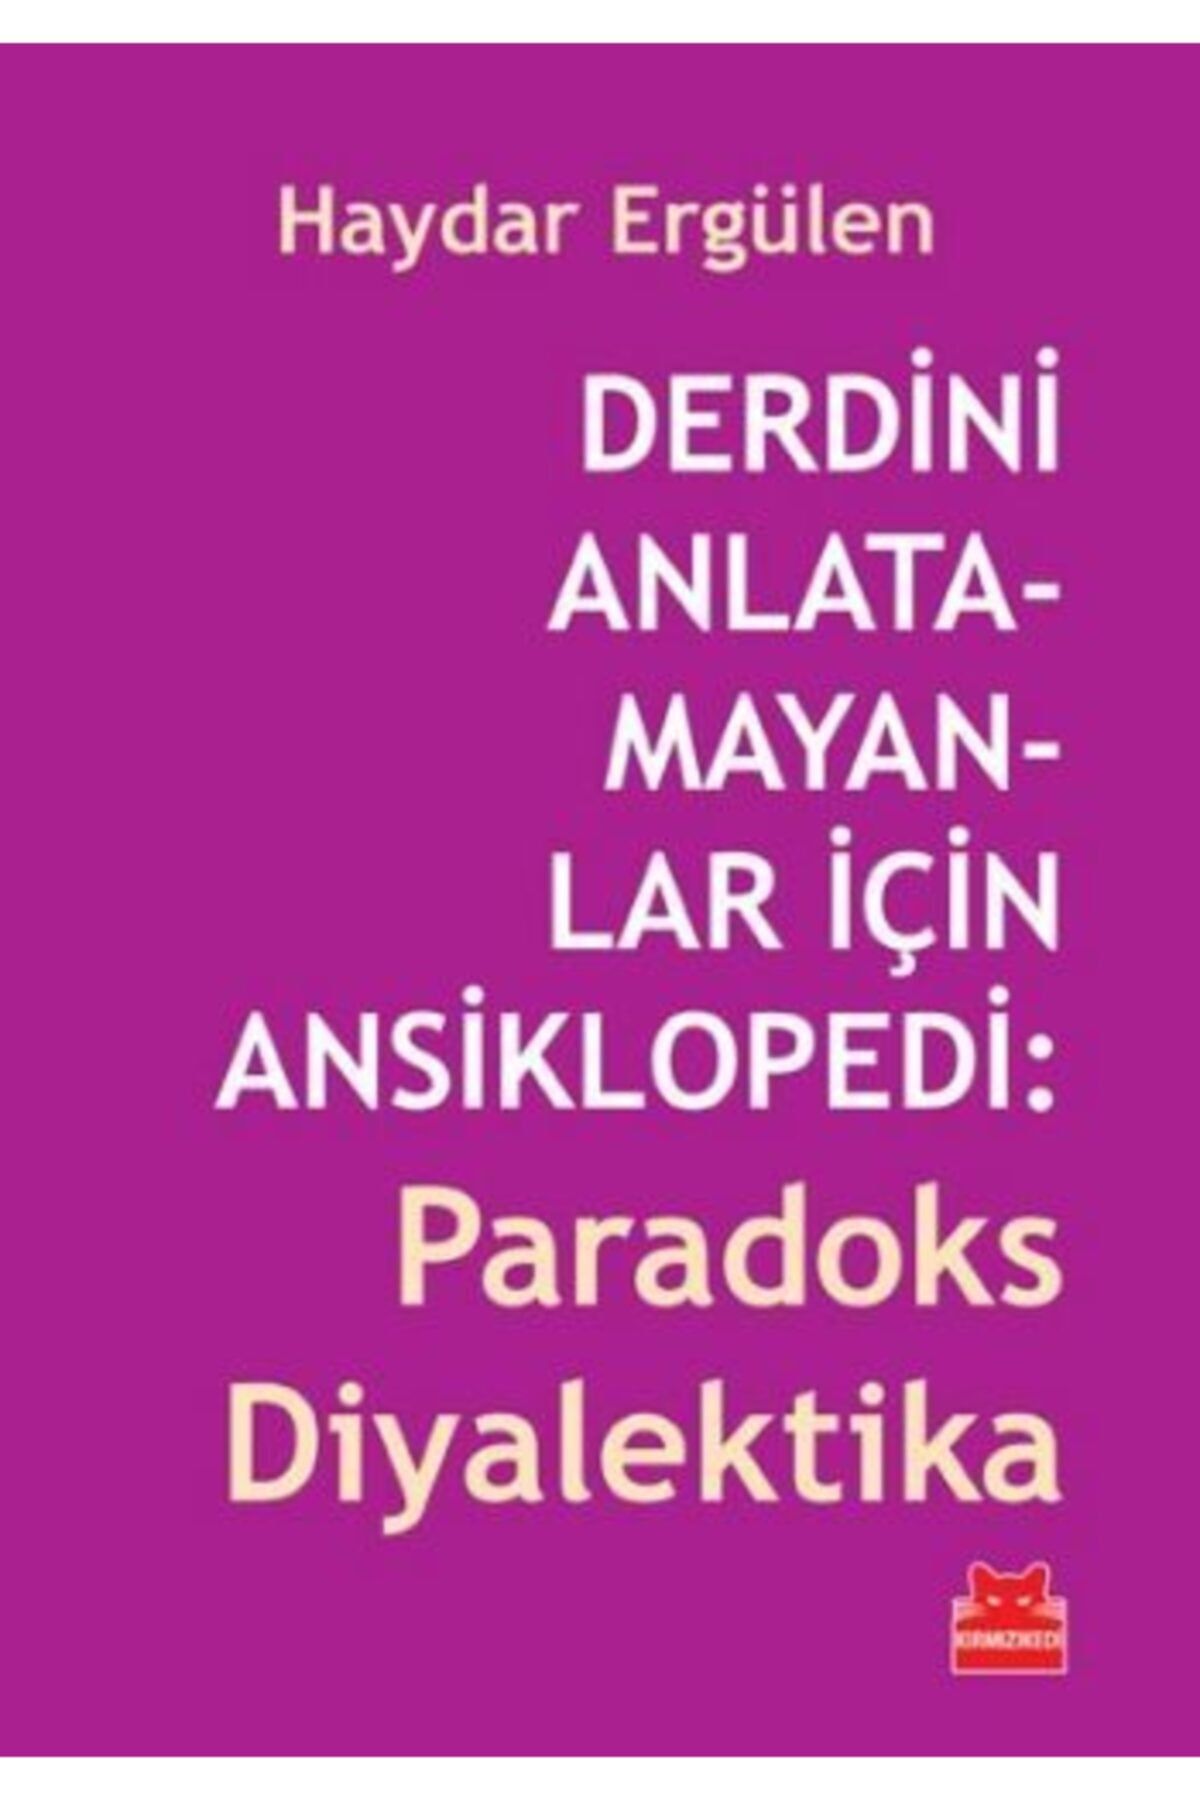 Kırmızı Kedi Yayınları Derdini Anlatamayanlar Için Ansiklopedi: Paradoks Diyalektika